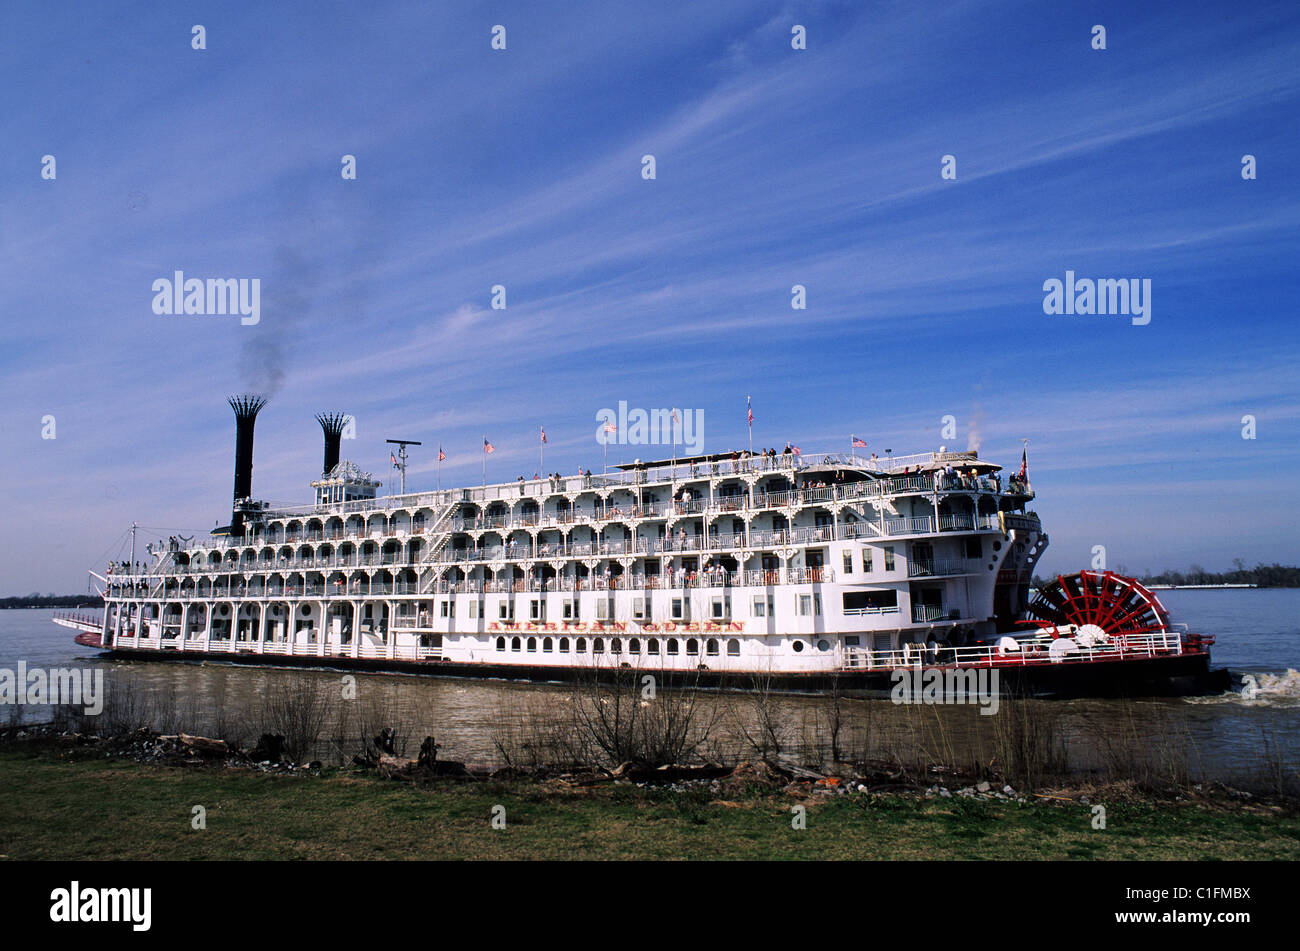 Etats-unis, Louisiane, roue à aubes à vapeur sur le fleuve Mississippi Banque D'Images